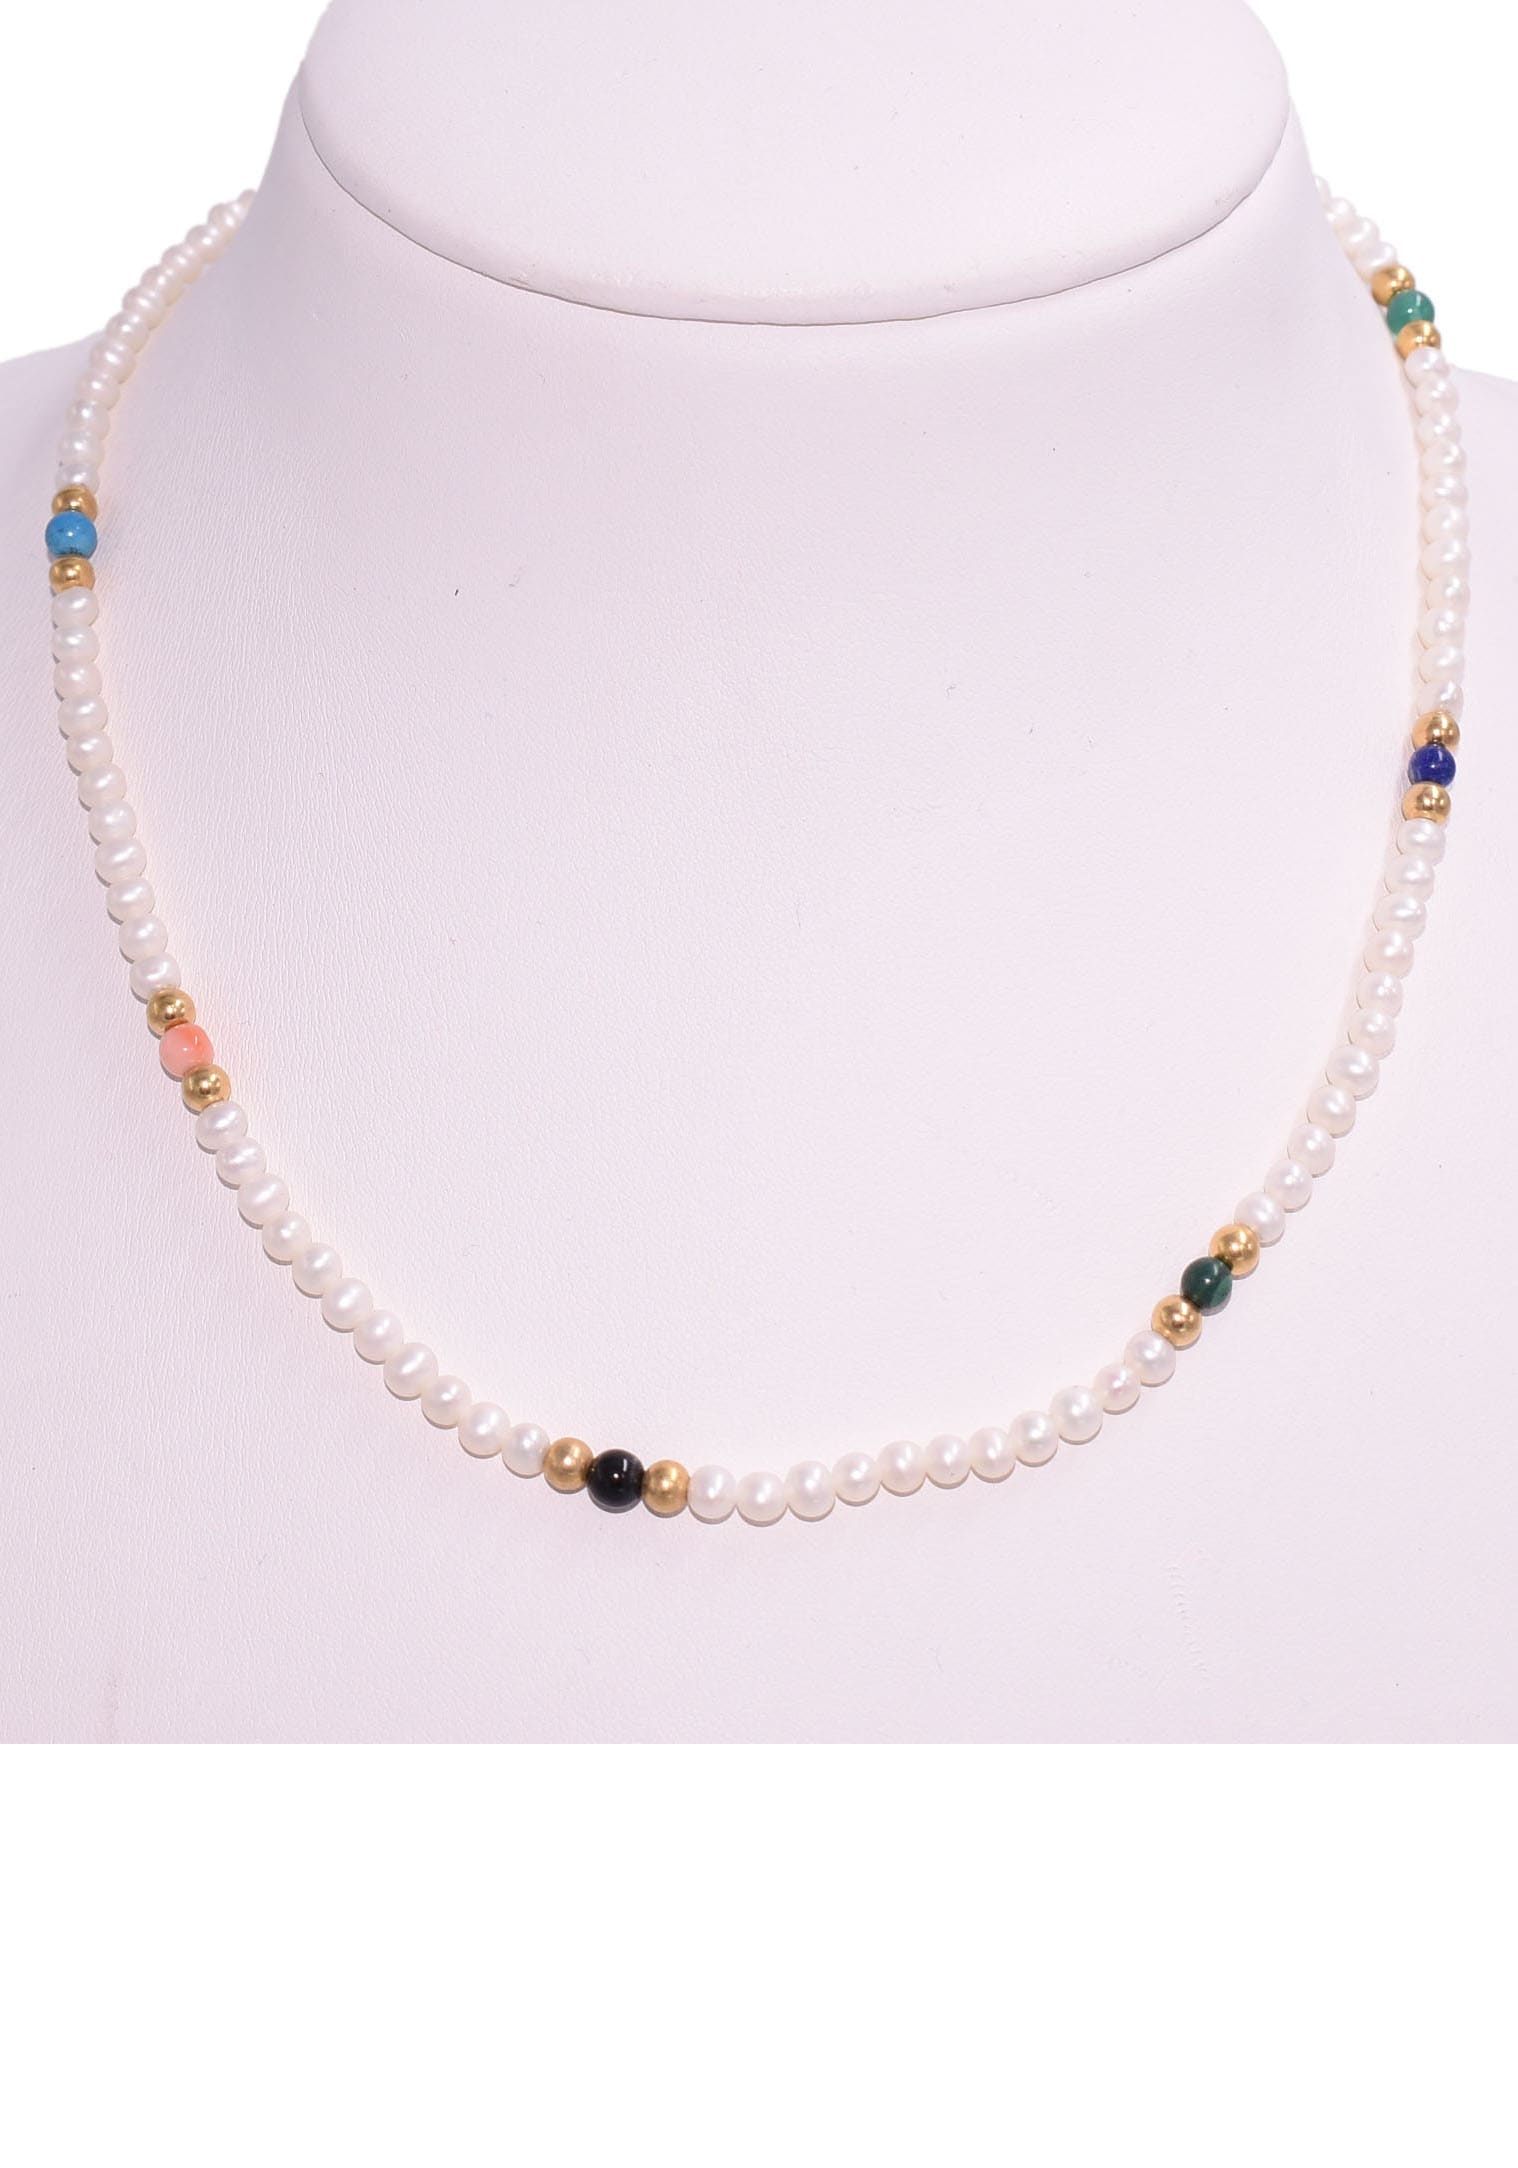 Made für Naturperle - Geschenk, mit Perlen«, | bestellen »Schmuck Firetti BAUR Germany in Perlenkette